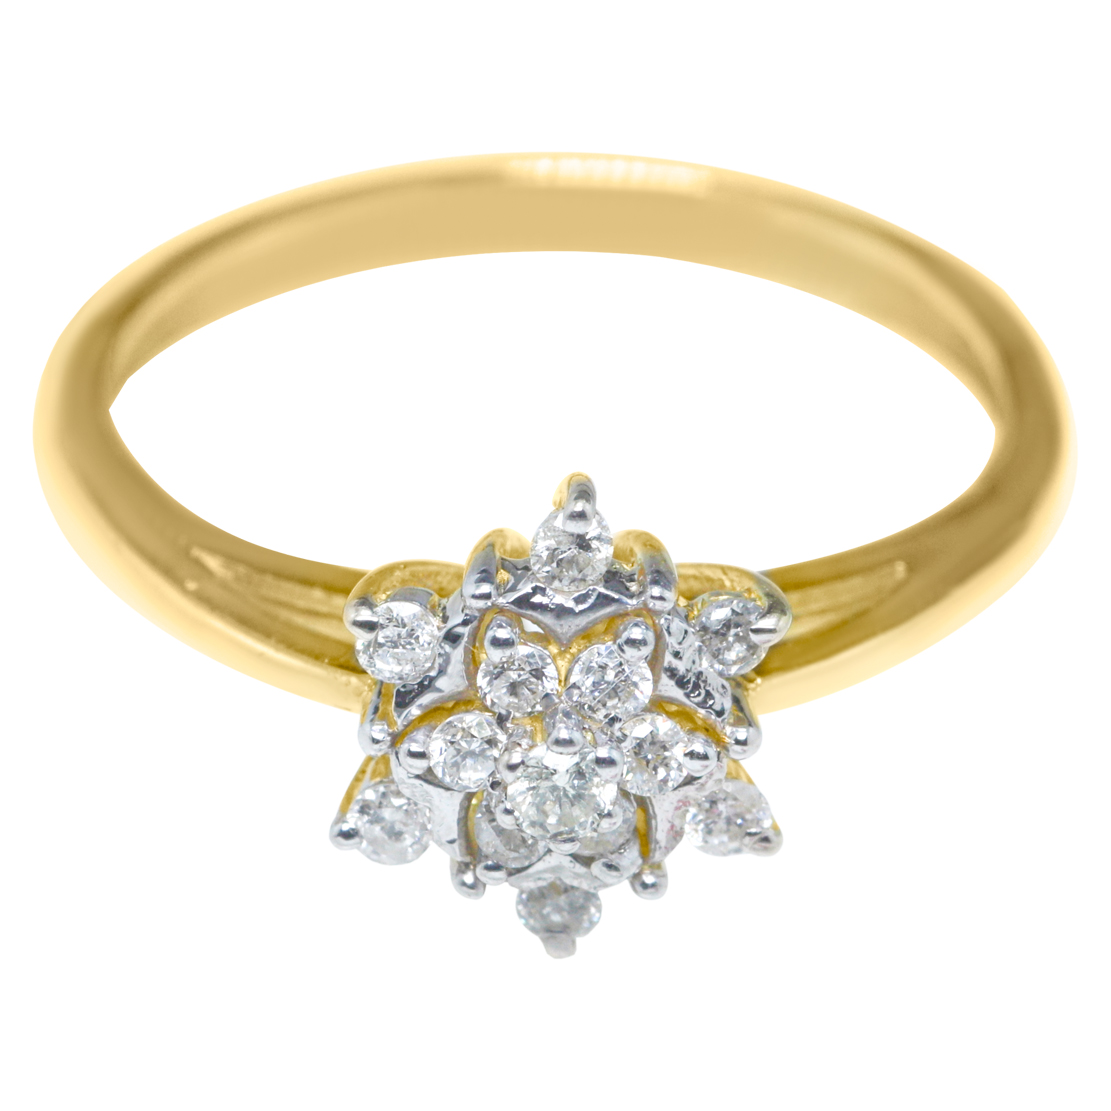 Buy Blue Diamond Rings of Engagement Online | Gold Couple Rings For  Engagement | Rose Gold Diamond Engagement Ring Designs For Female